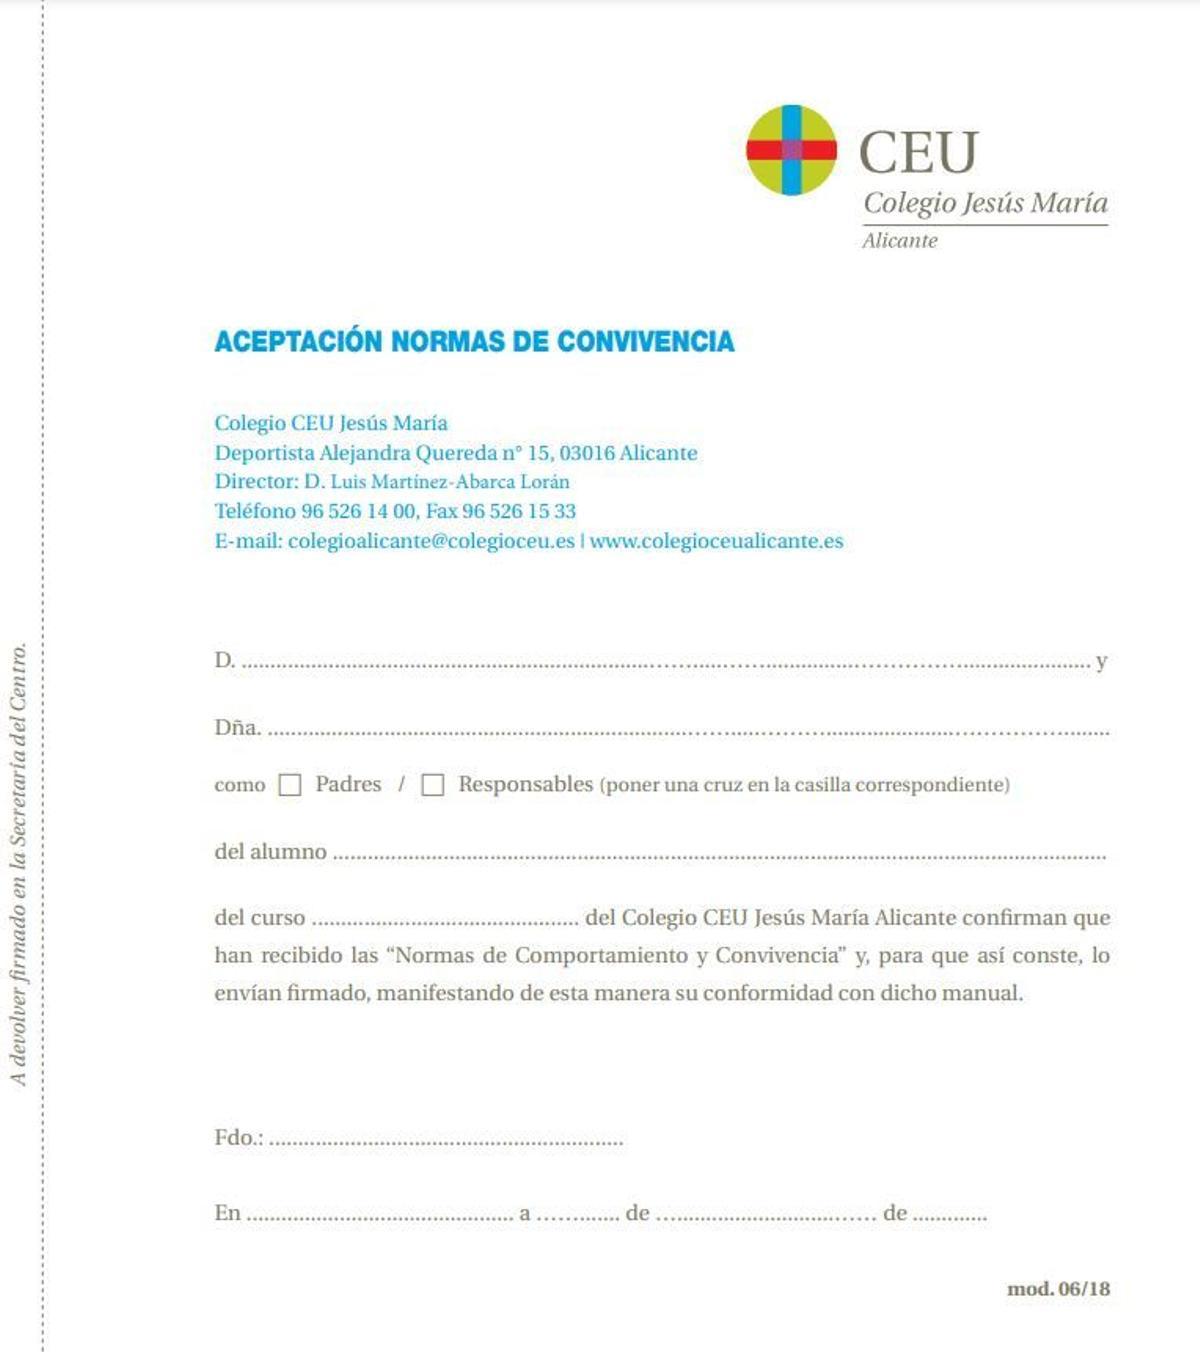 Modelo de aceptación de las normas de convivencia del CEU Jesús María de Alicante.